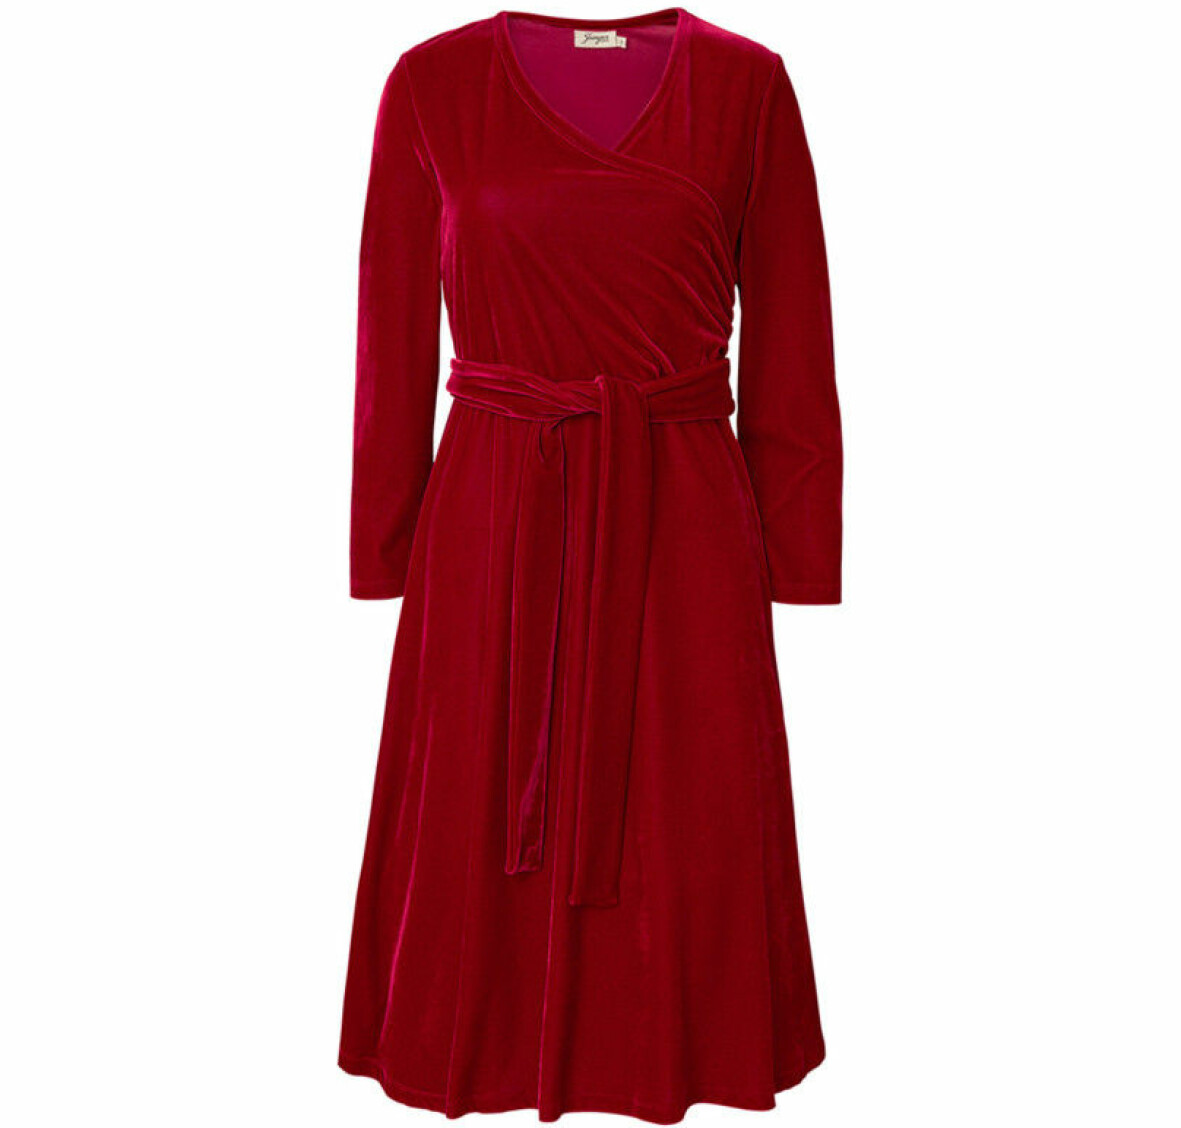 Röd klänning med skärp